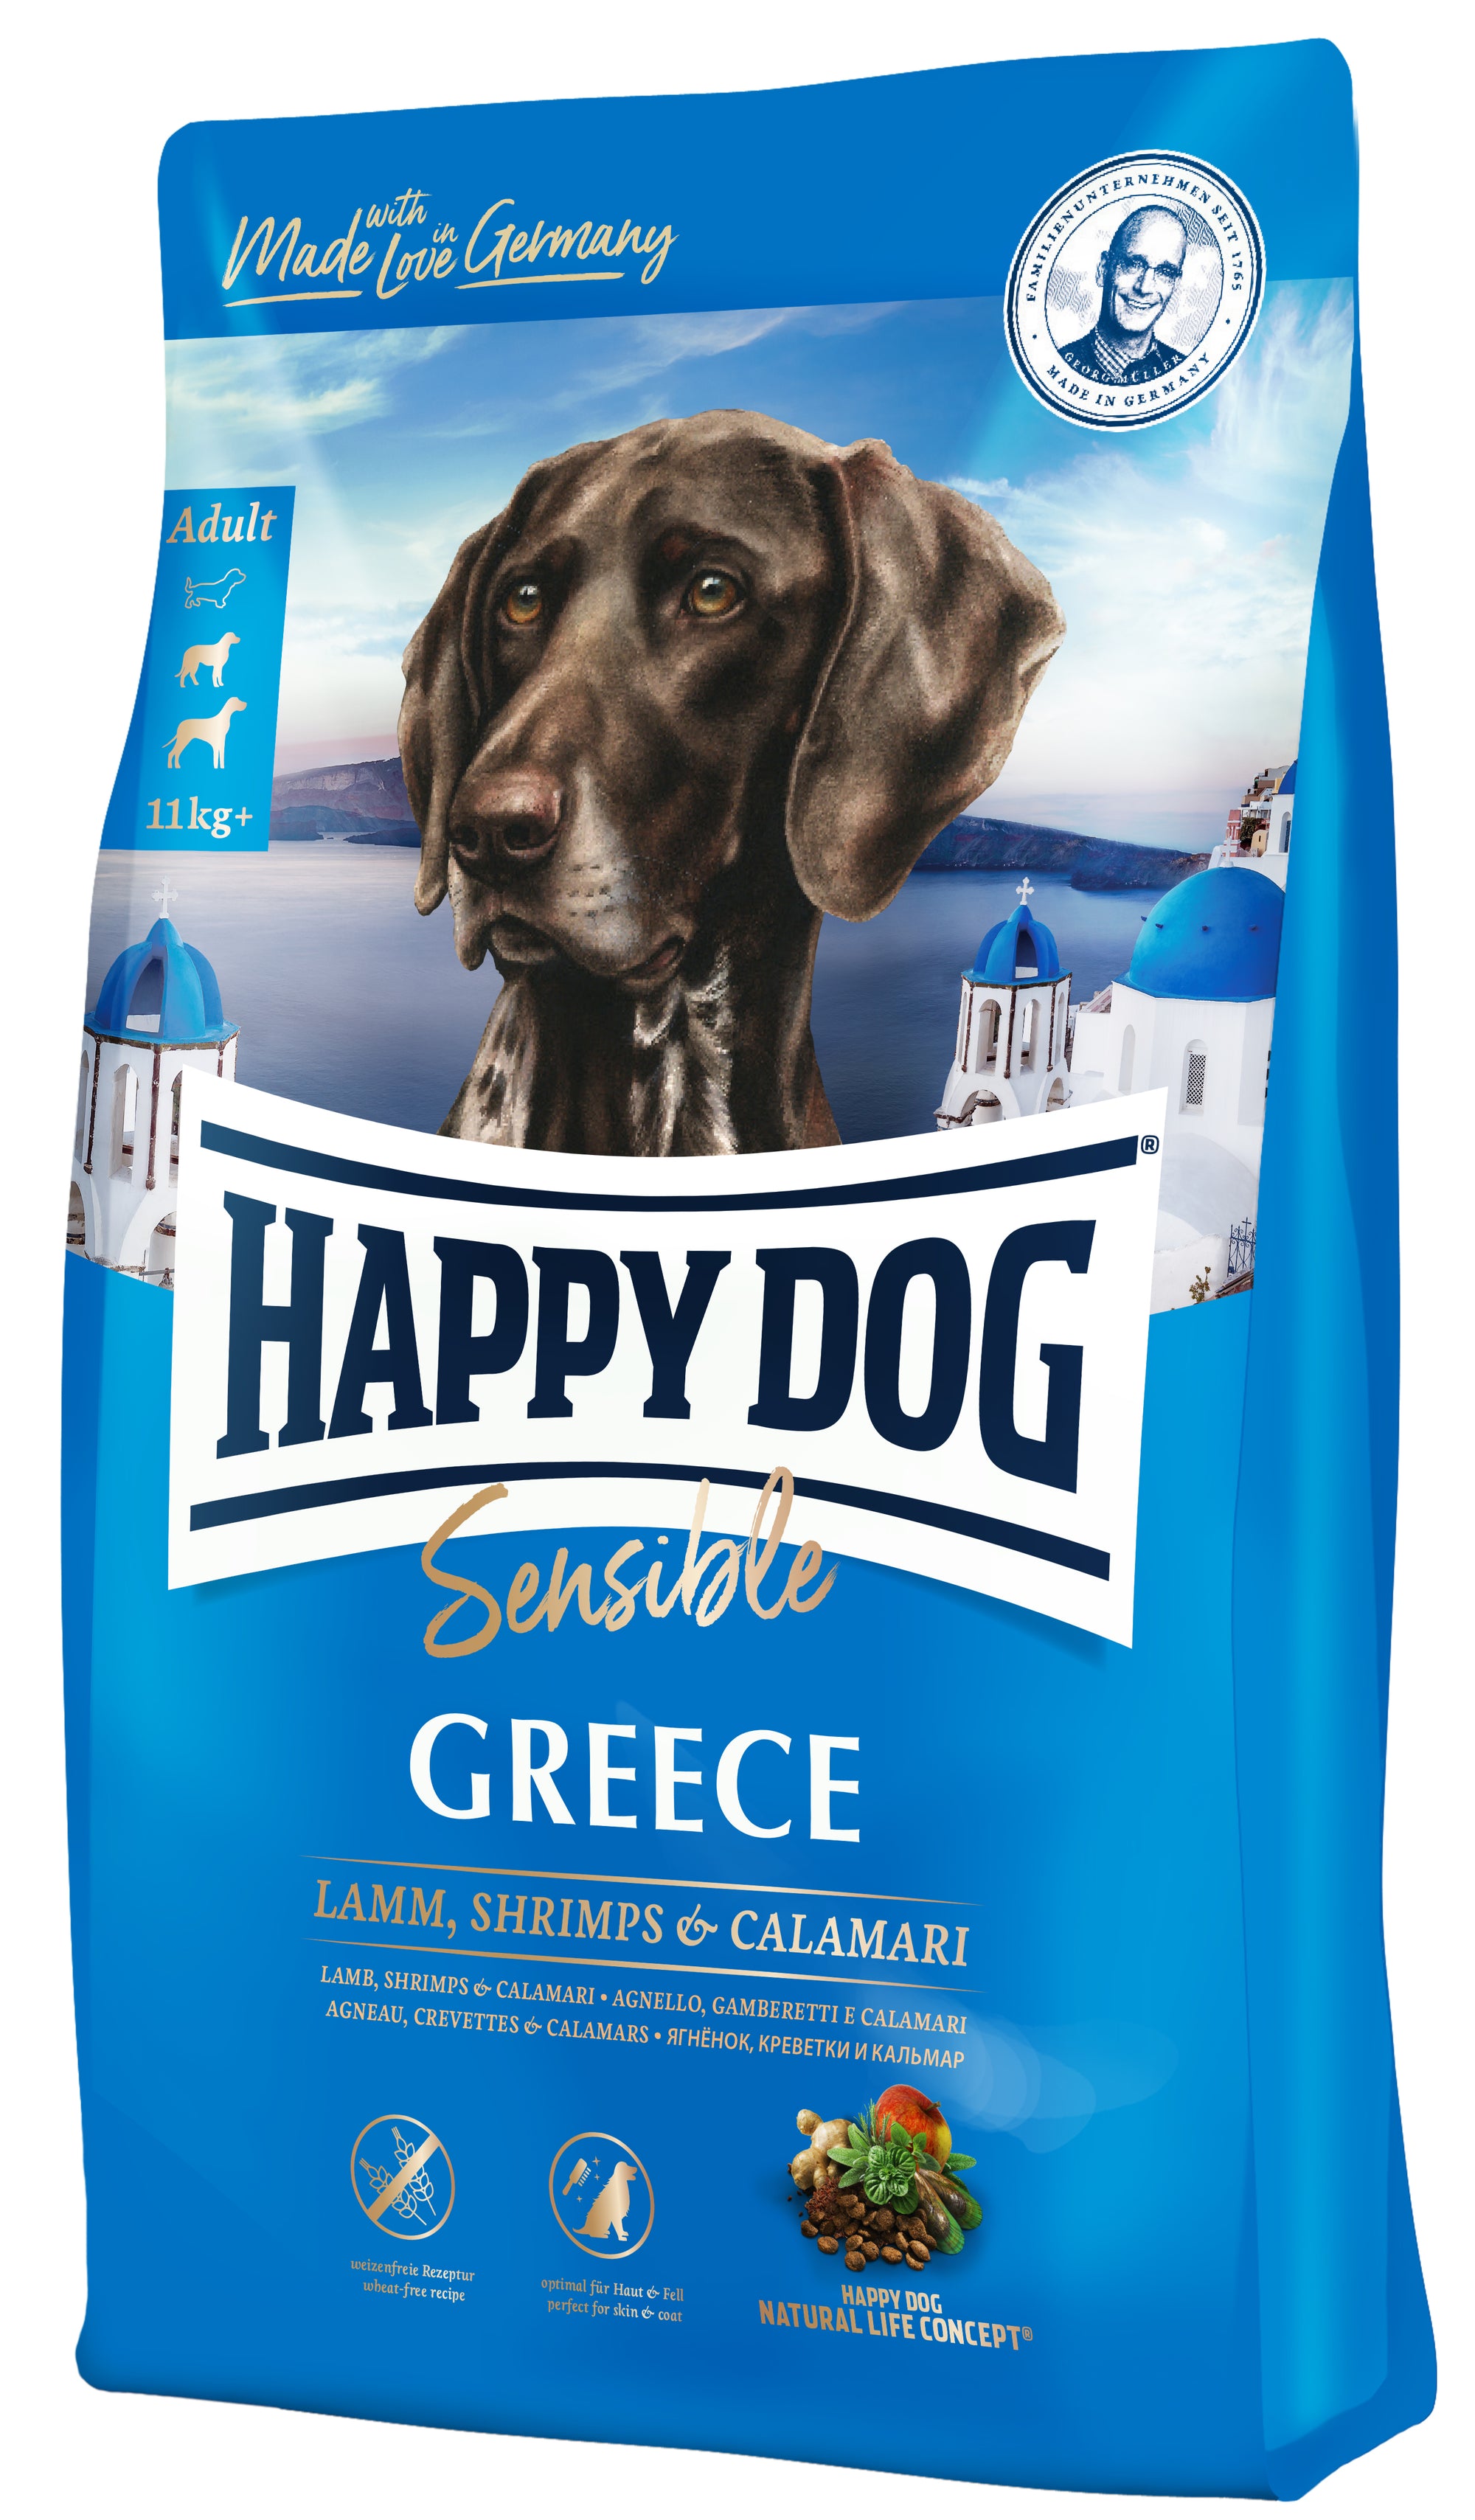 Artikel mit dem Namen Happy Dog Sensible Greece im Shop von zoo.de , dem Onlineshop für nachhaltiges Hundefutter und Katzenfutter.